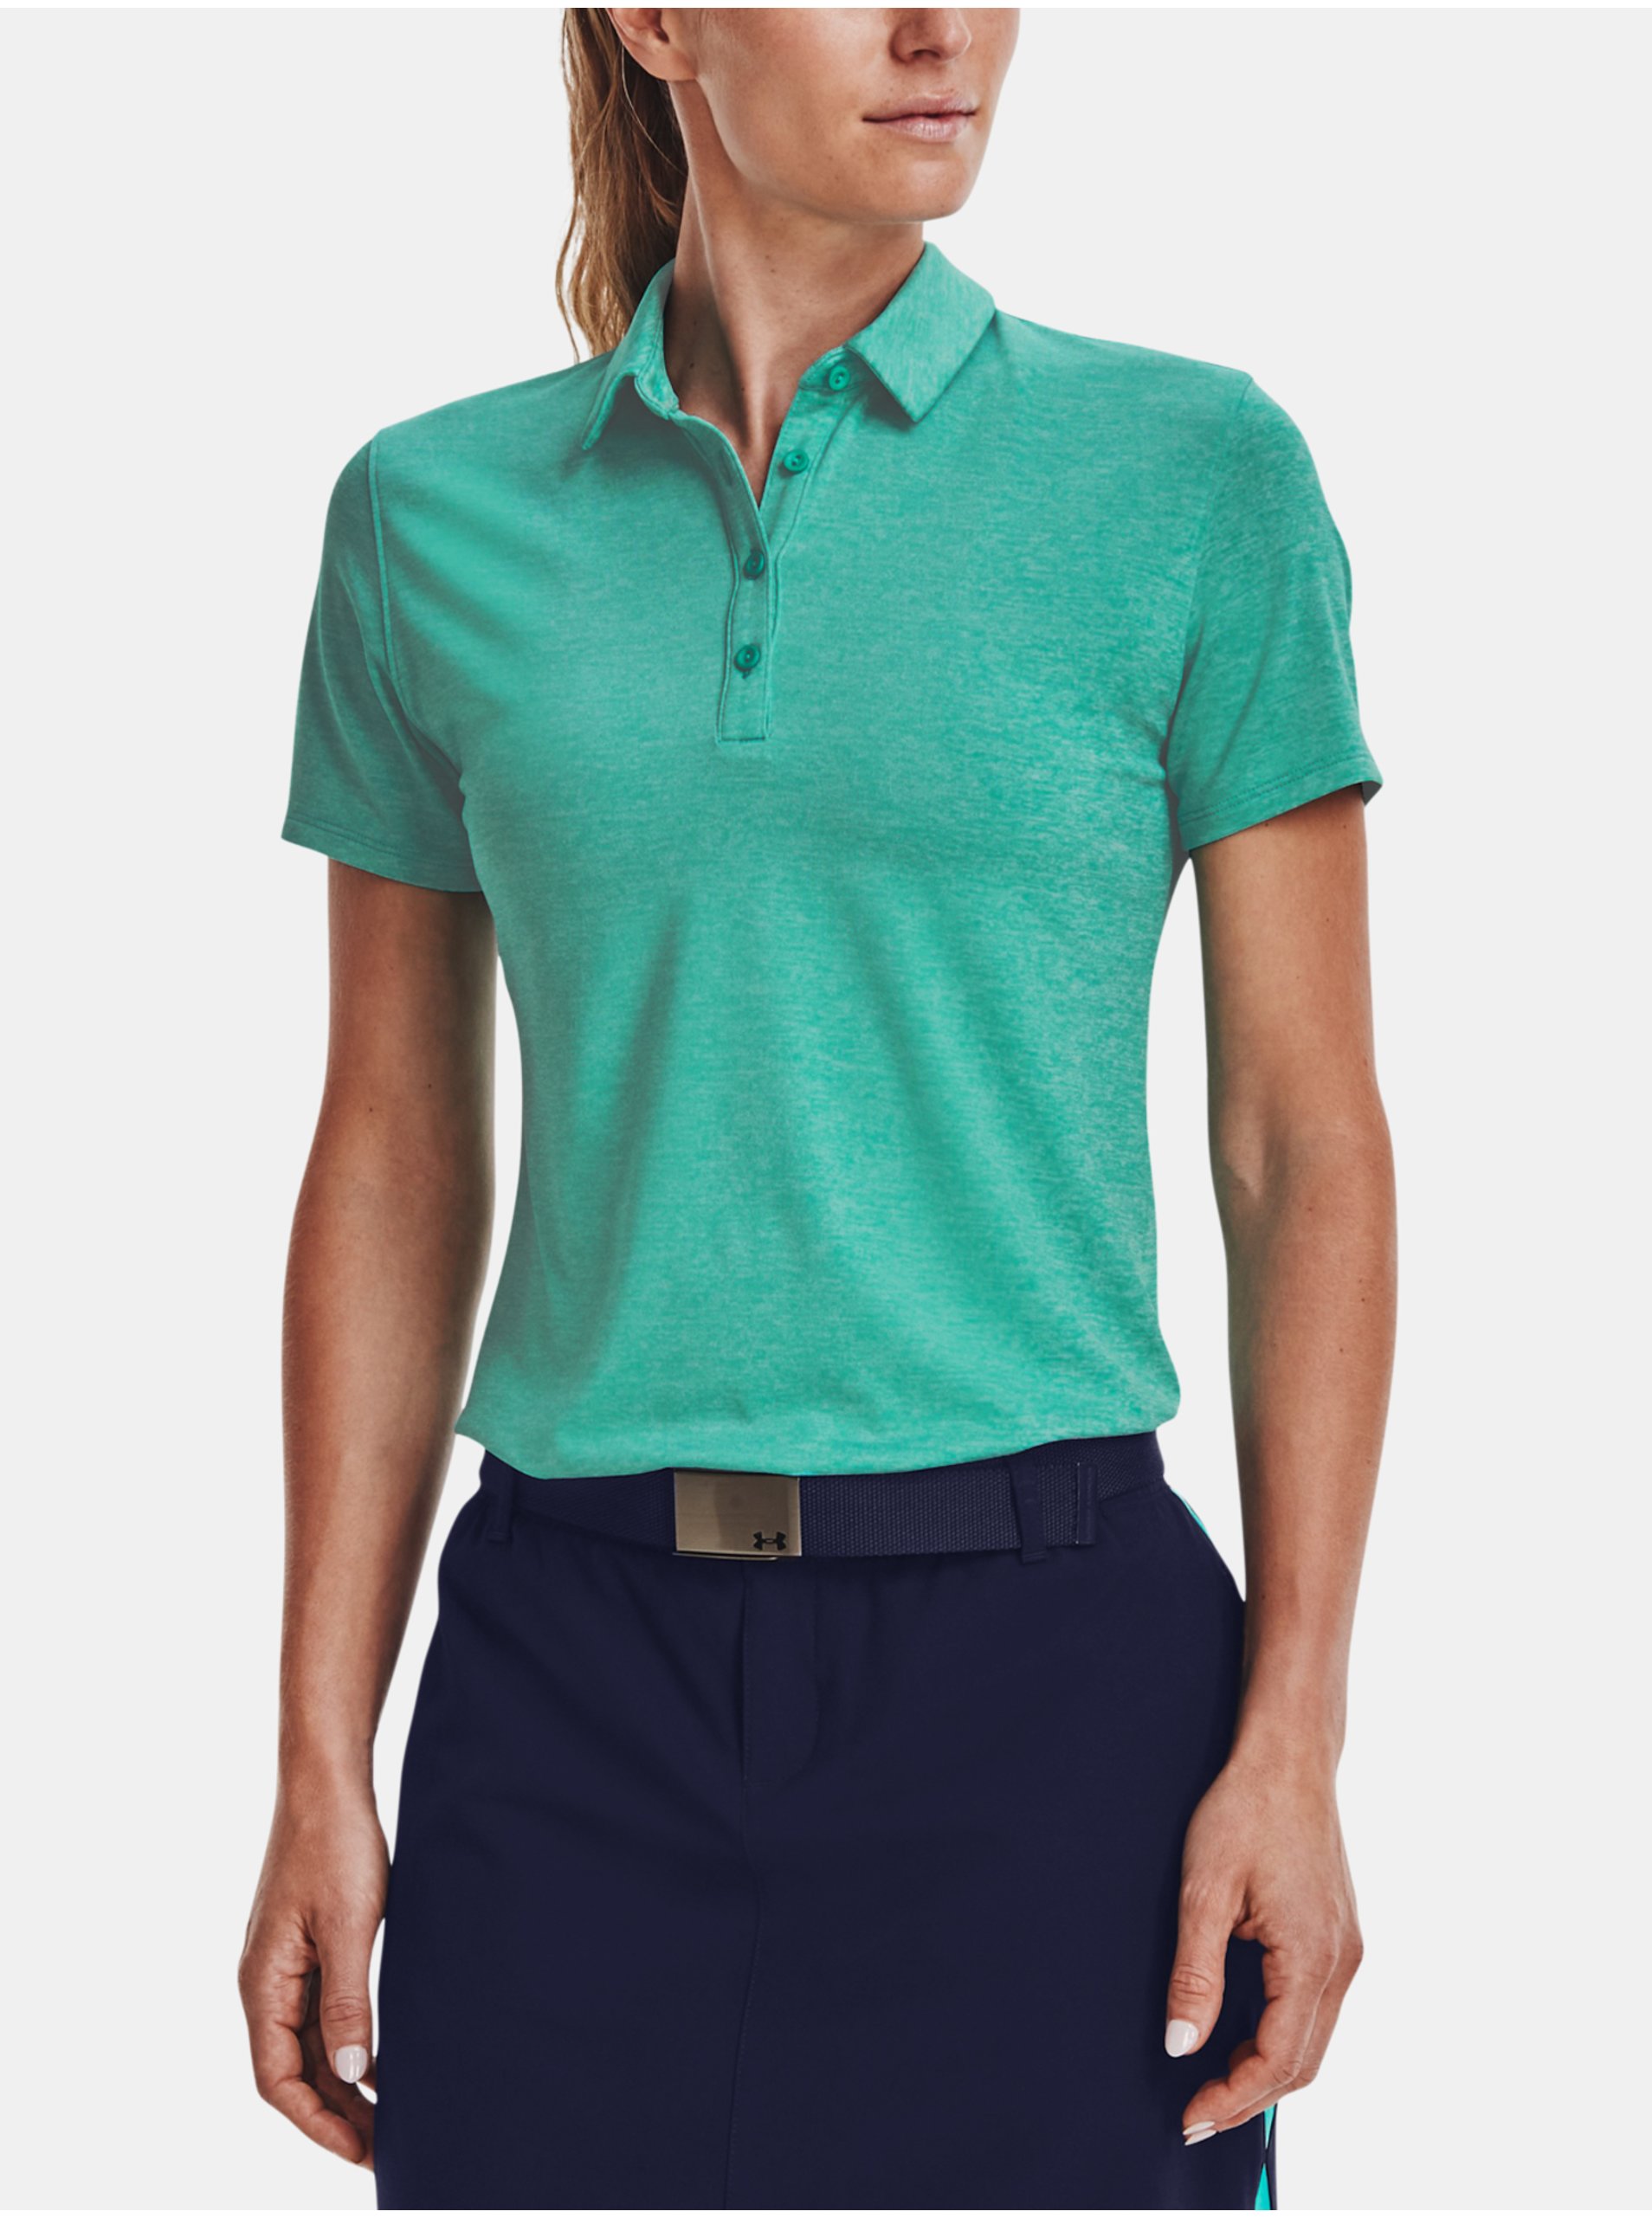 E-shop Zelené dámské žíhané sportovní polo tričko Under Armour Zinger Short Sleeve Polo